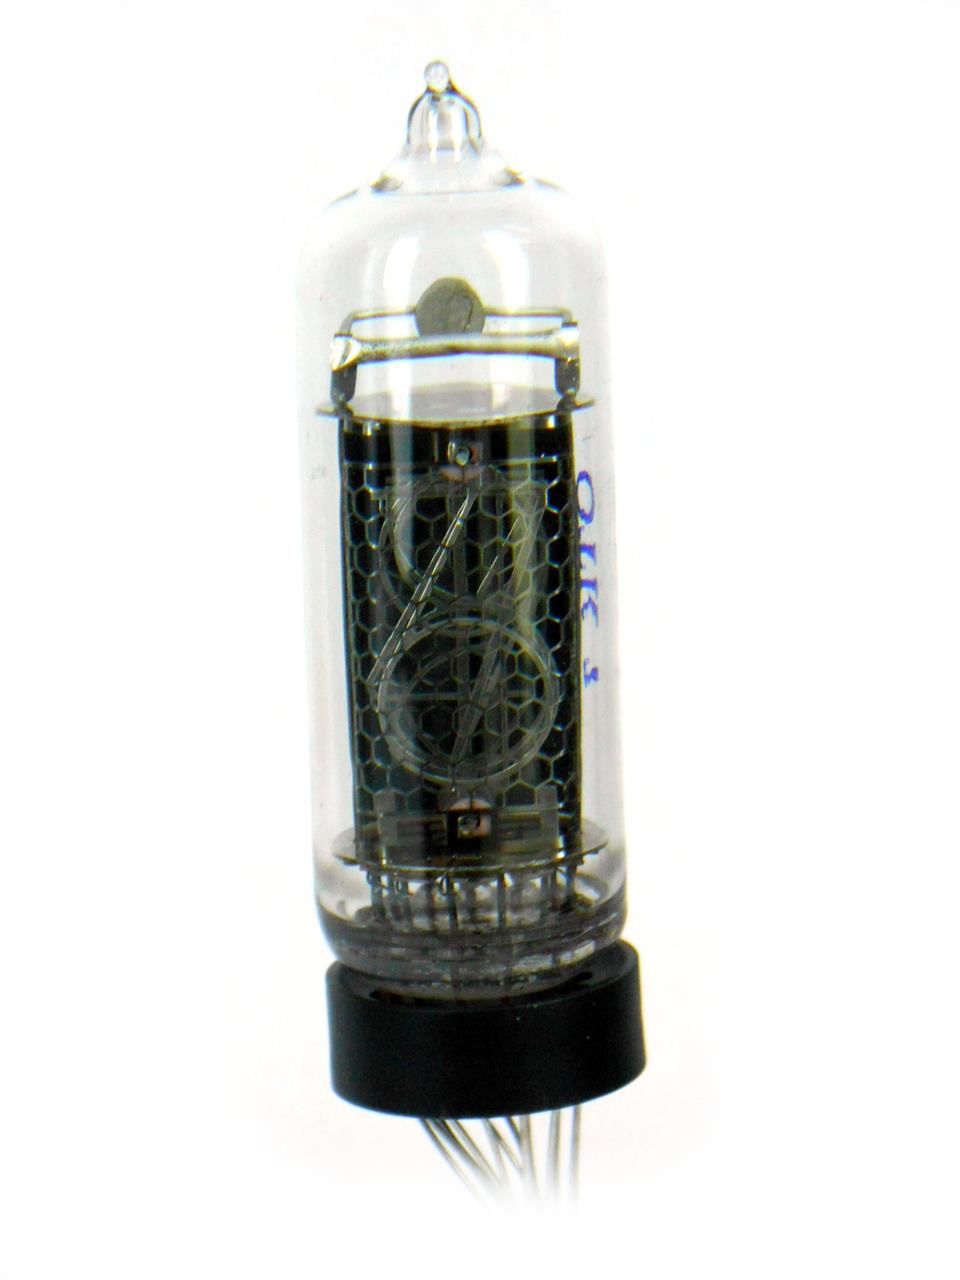 Válvulas eletrônicas preenchidas com gases rarefeitos - Nixie tube IN14